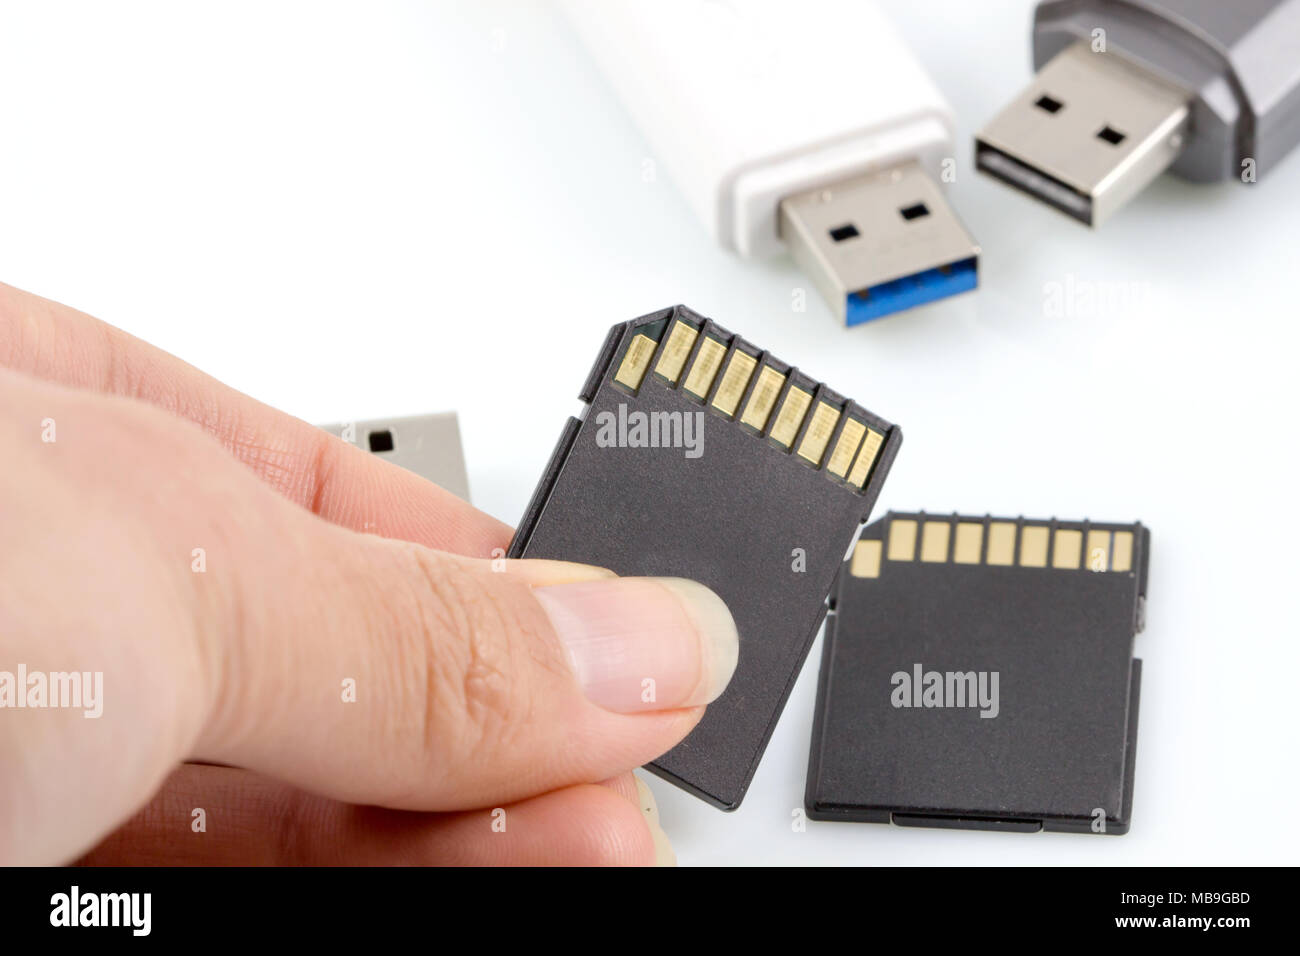 Hand hält SD-Card, Speicherkarte gegen usb, flash drive auf weißem  Hintergrund Stockfotografie - Alamy